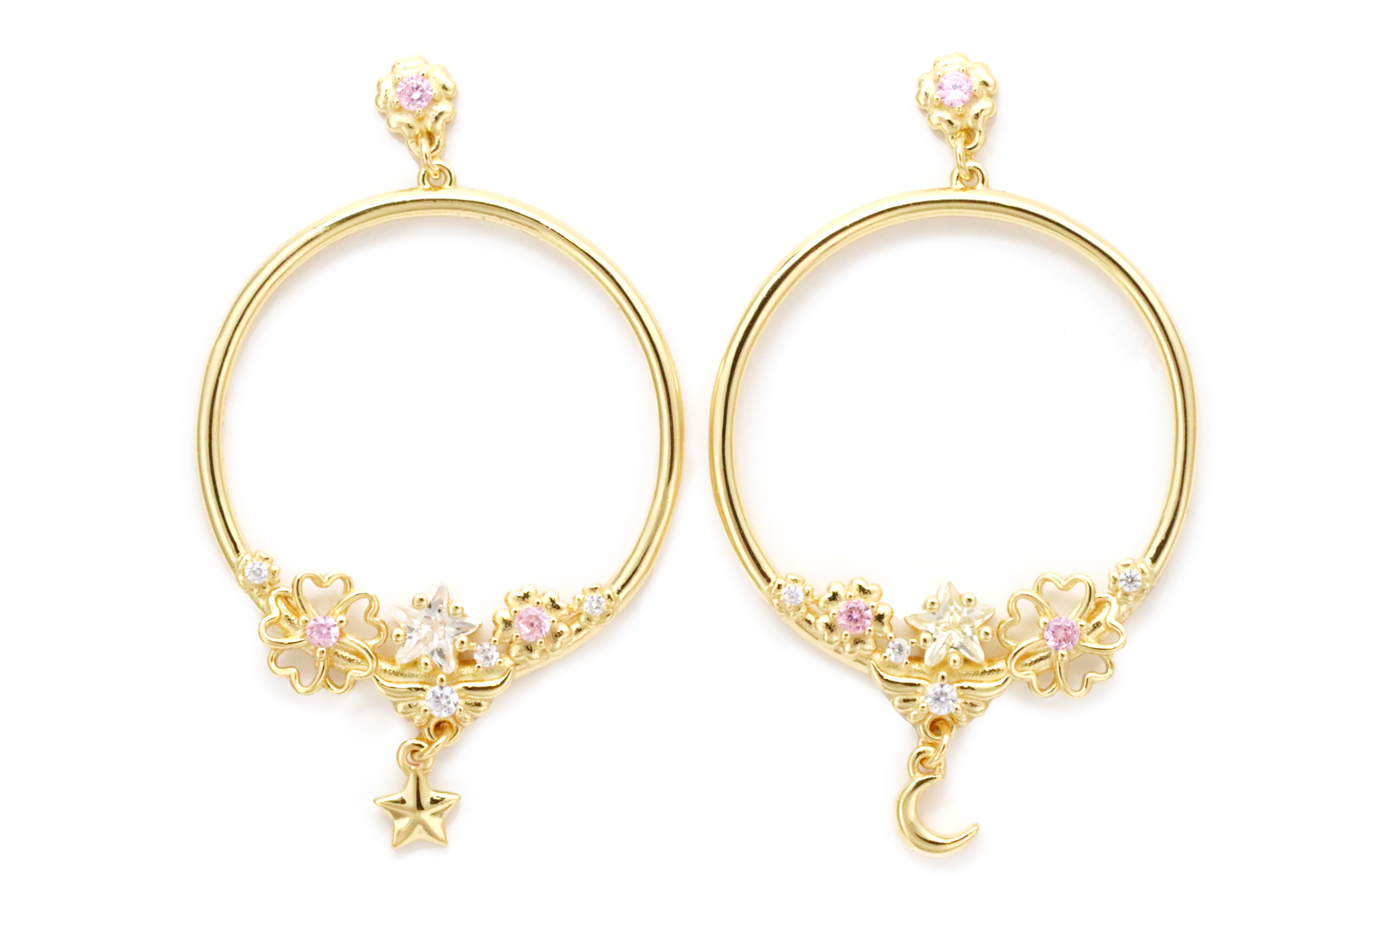 Sakura Blossom Earring Hoops - Earrings - 1